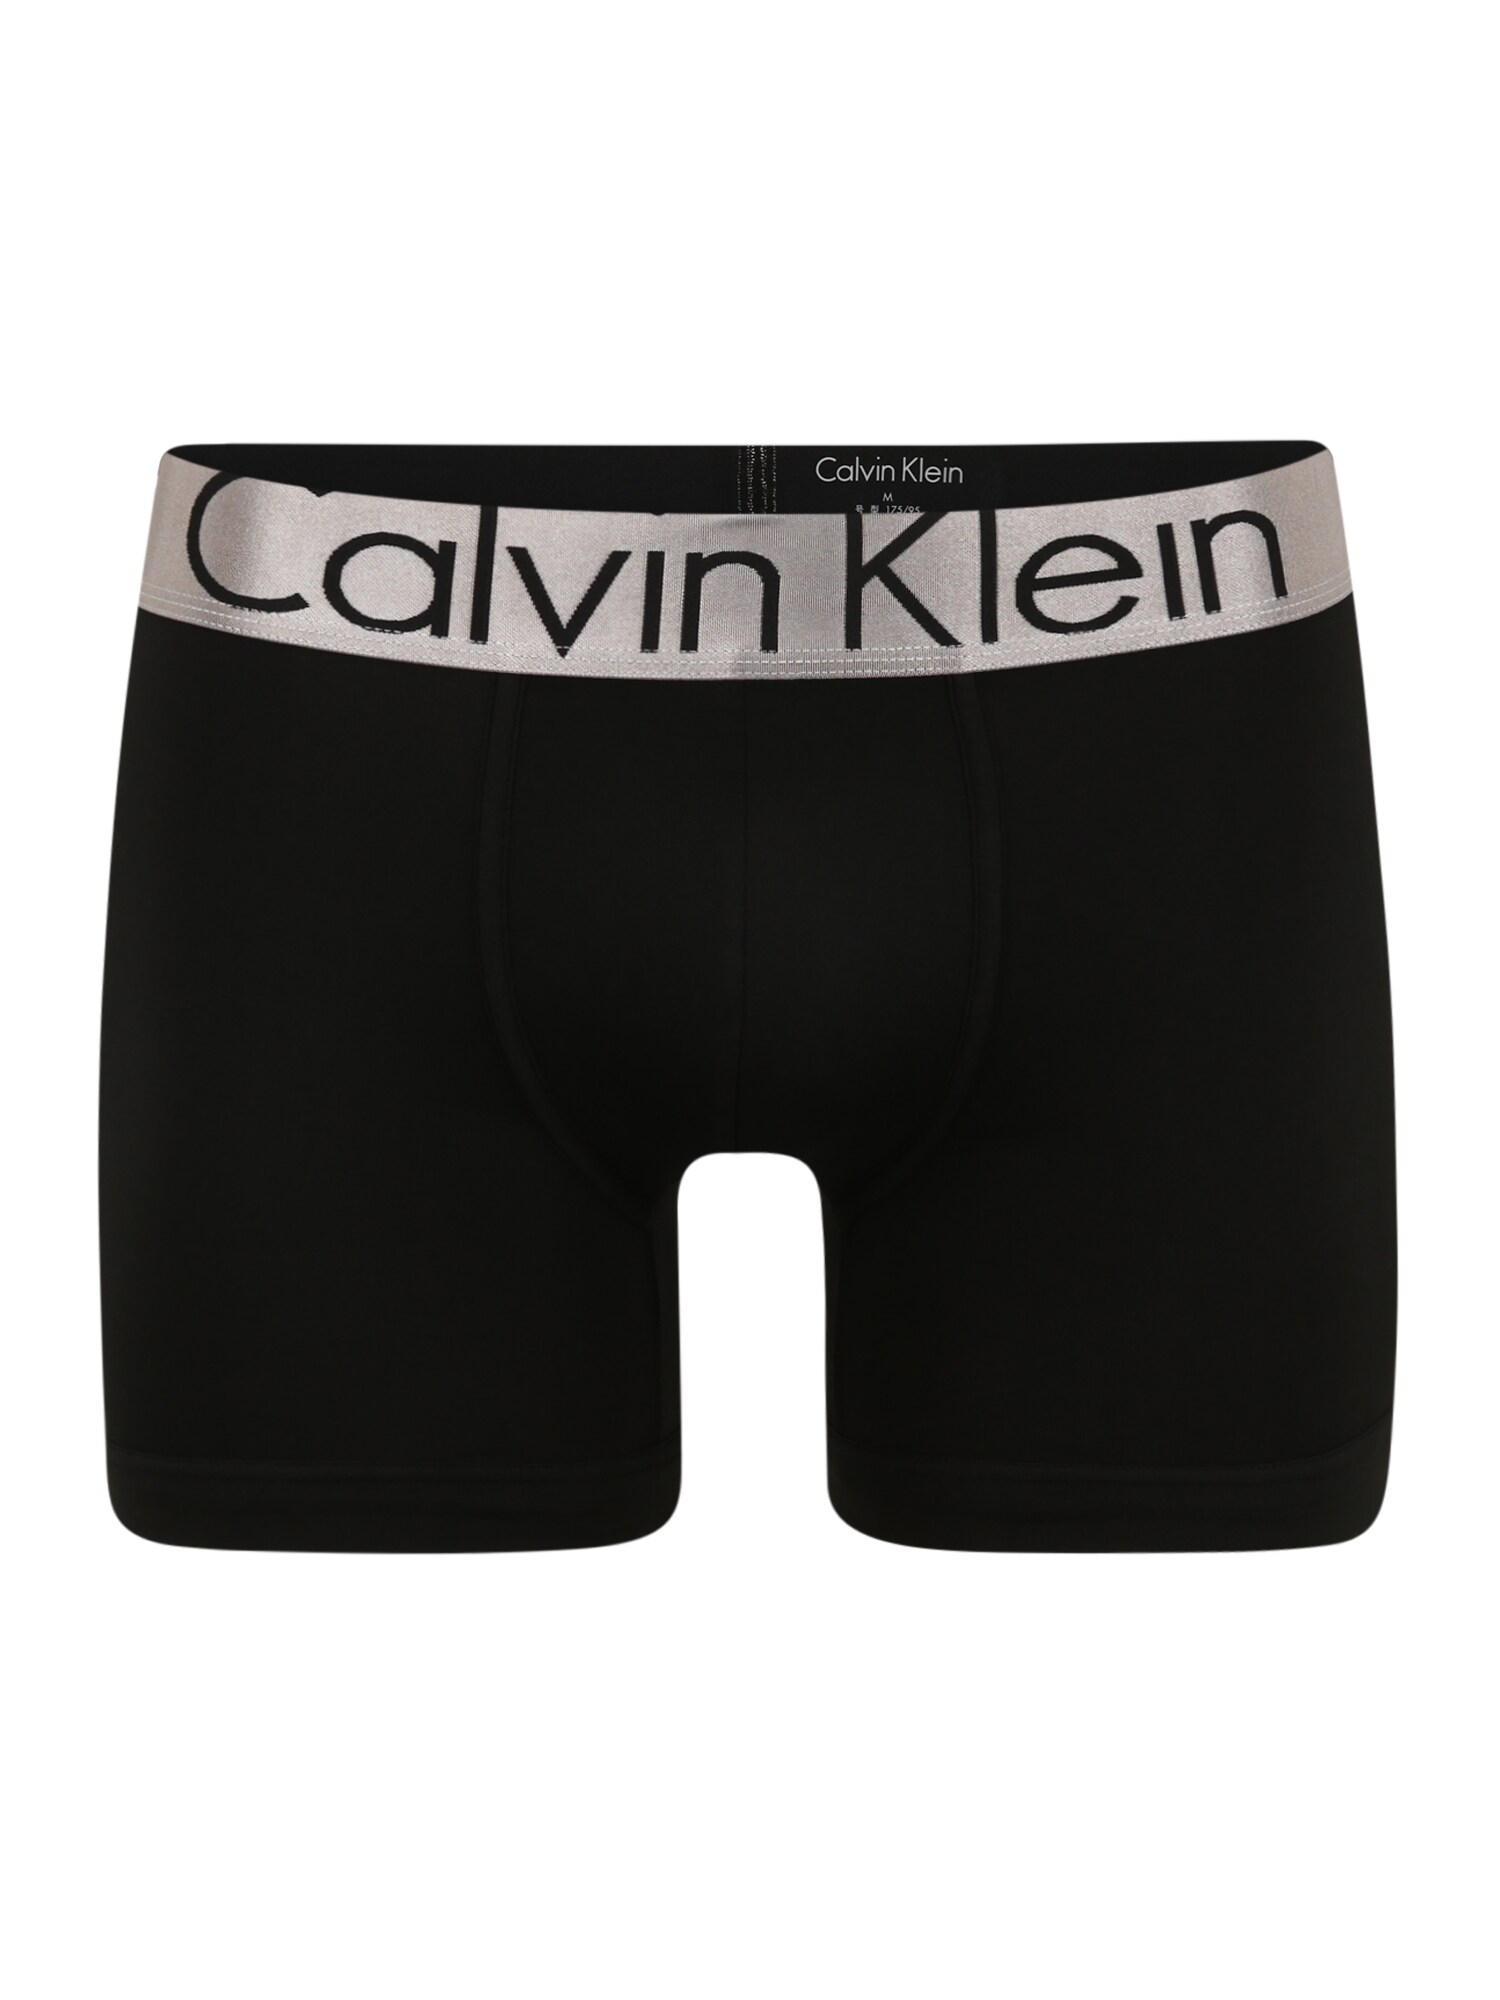 Calvin Klein Underwear Boxer trumpikės  juoda / platininė spalva